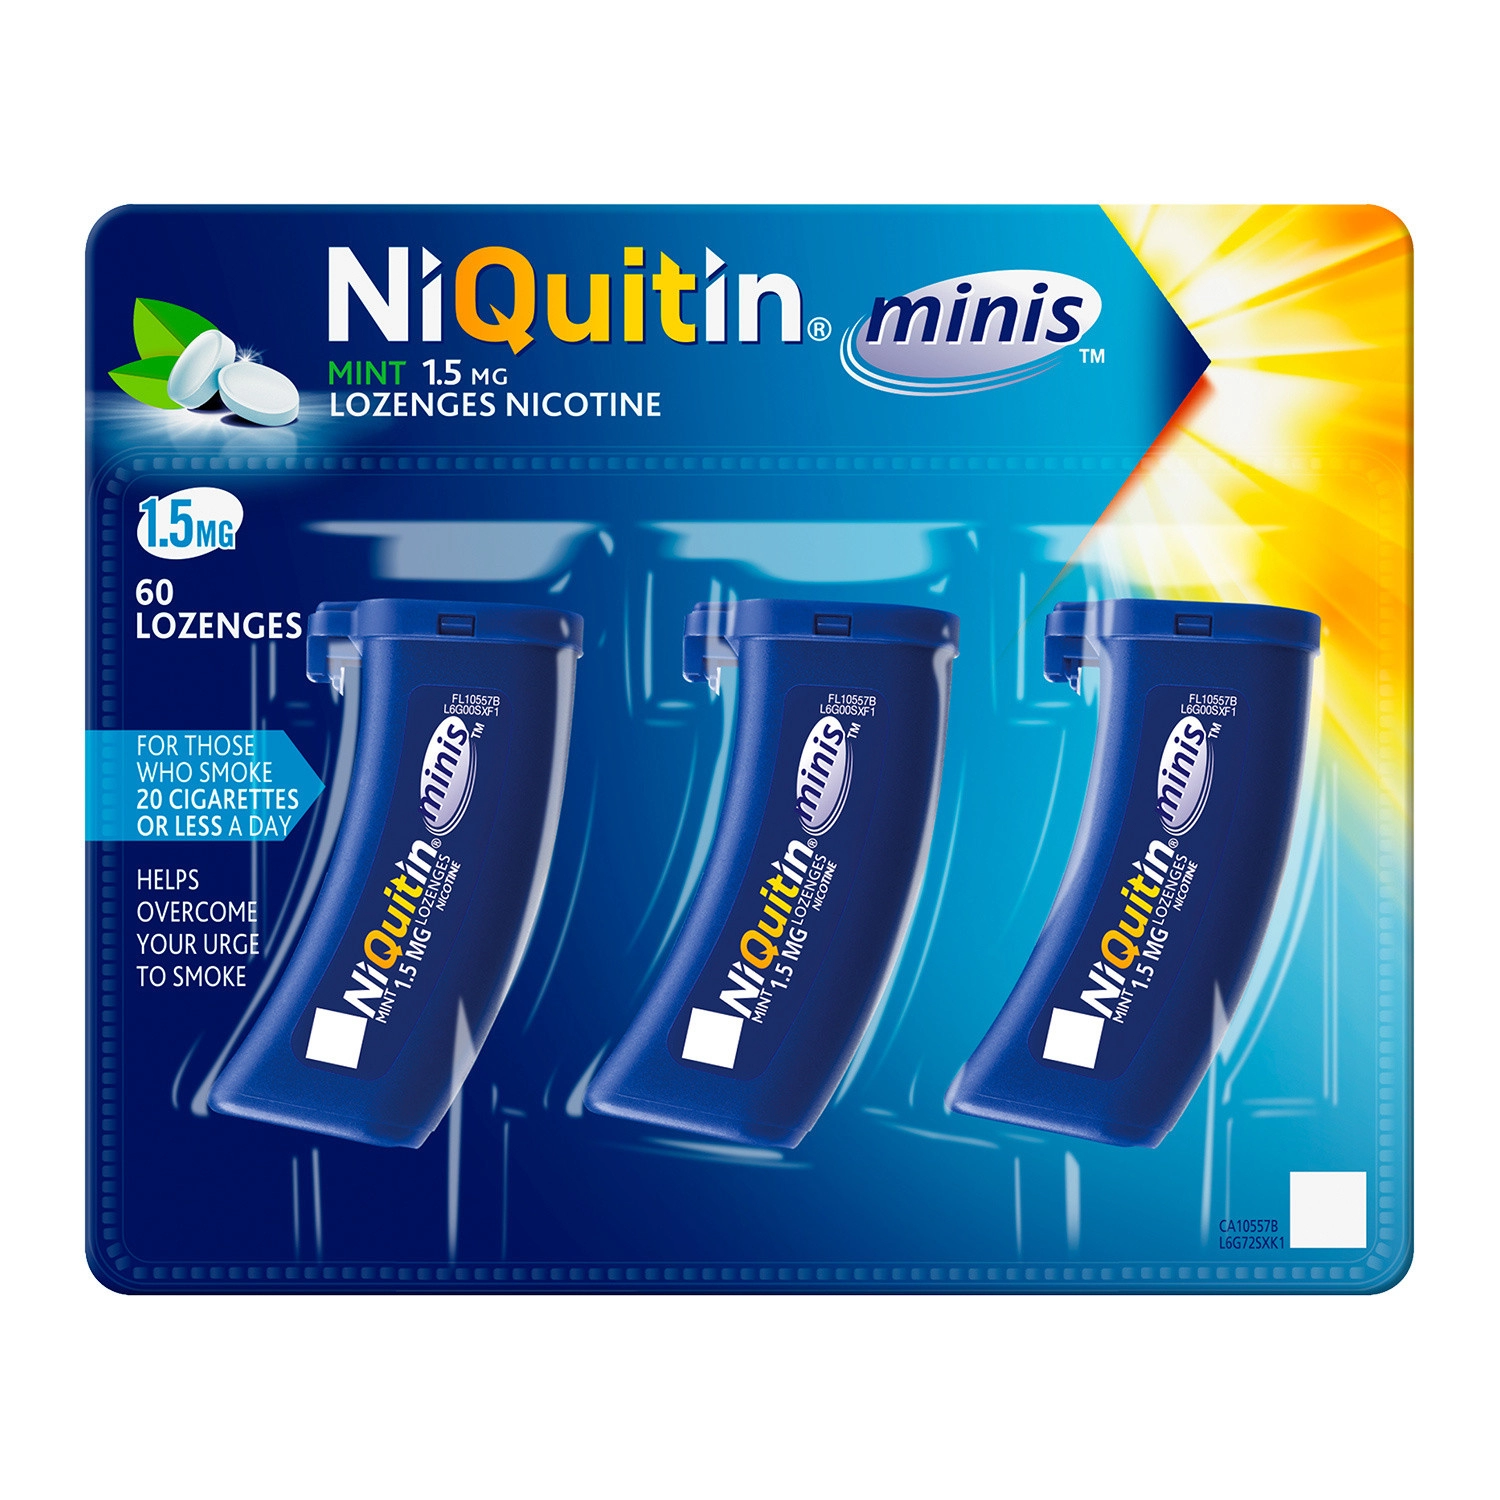 Niquitin Mint 1.5mg Lozenges Nicotine 60 Lozenges